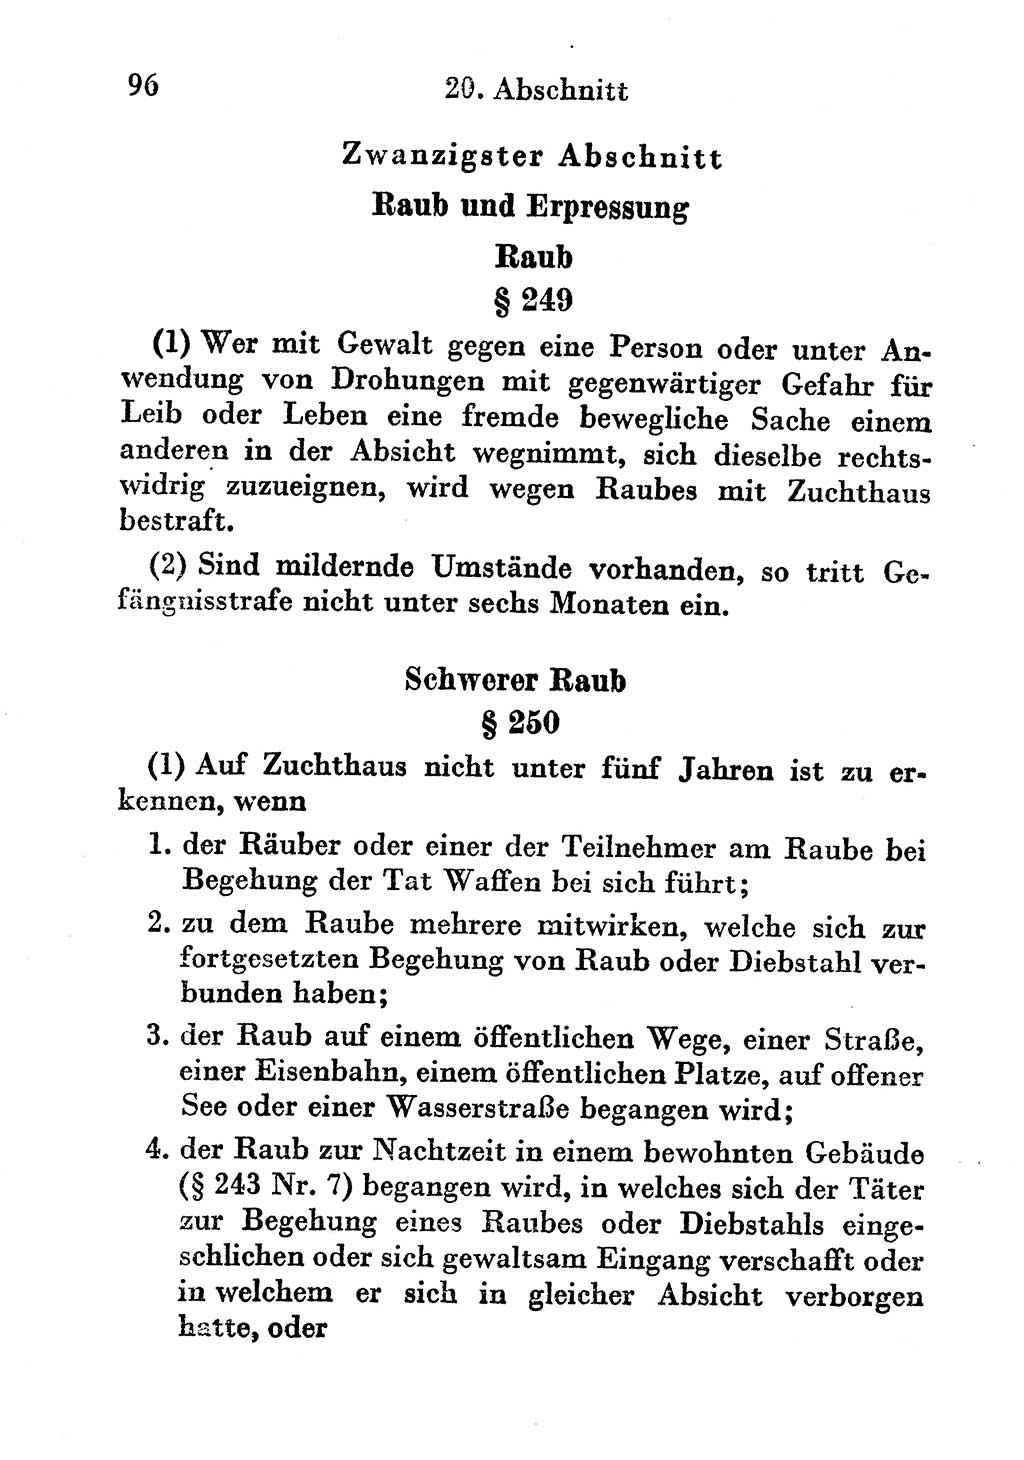 Strafgesetzbuch (StGB) und andere Strafgesetze [Deutsche Demokratische Republik (DDR)] 1956, Seite 96 (StGB Strafges. DDR 1956, S. 96)